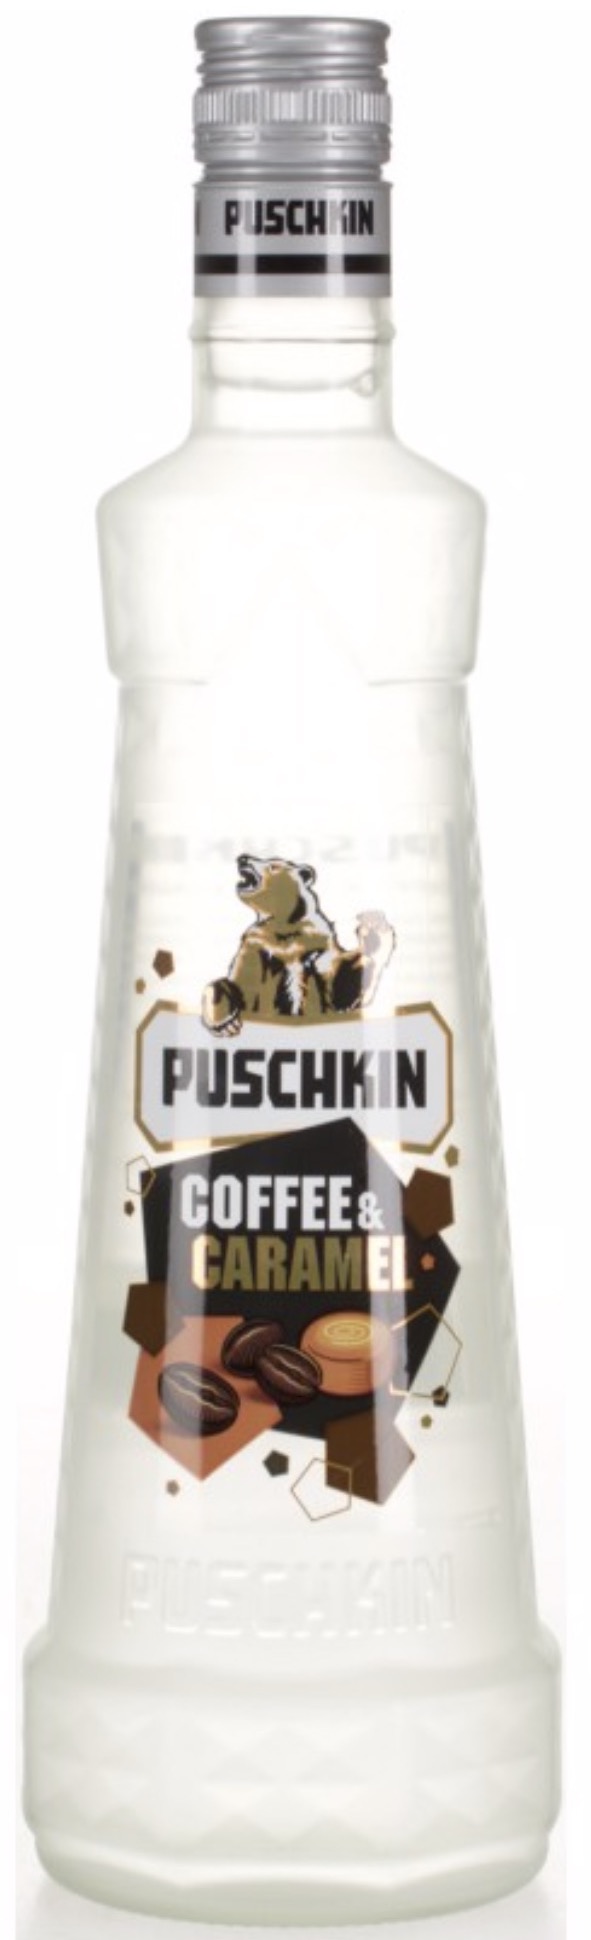 Puschkin Coffee & Caramel 17,5% vol. 0,7l